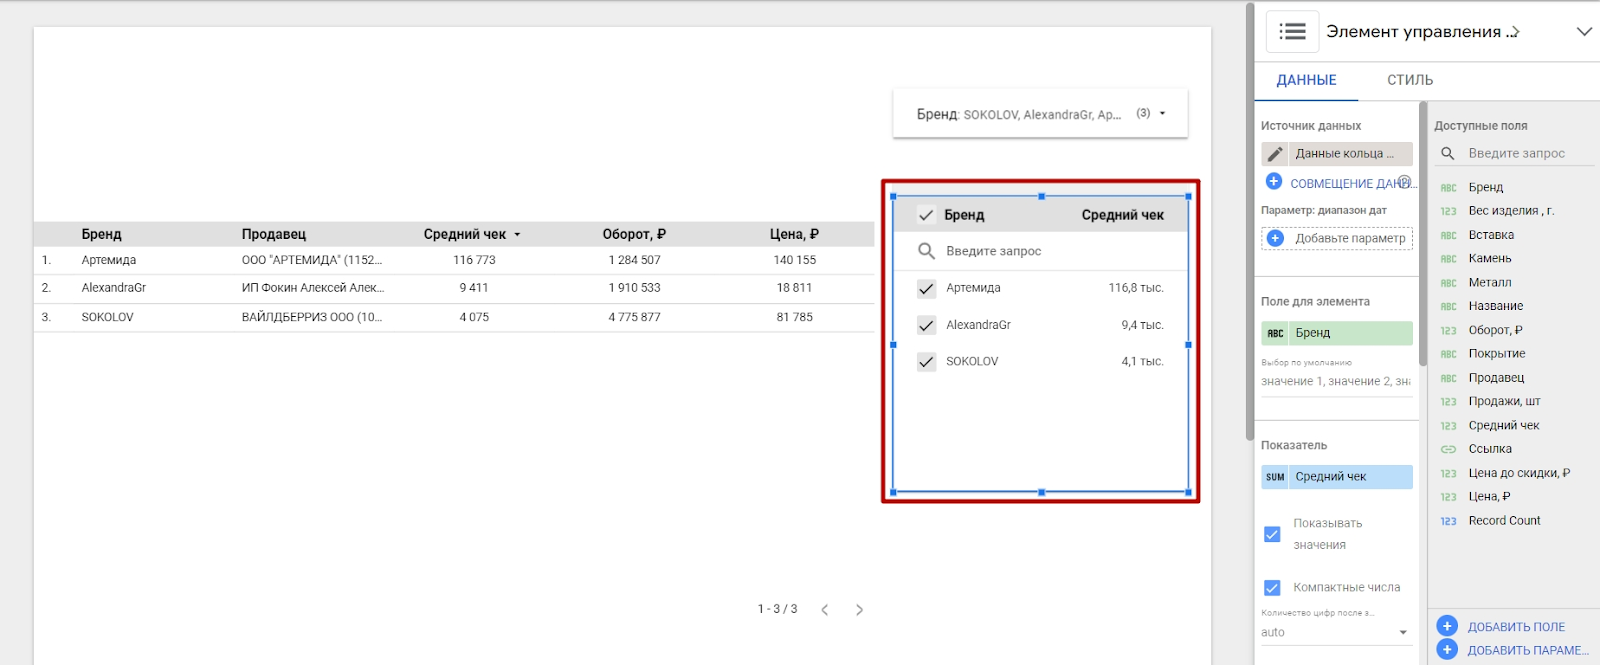 Пример расположения элемента управления Список фиксированного размера в отчете Google Data Studio